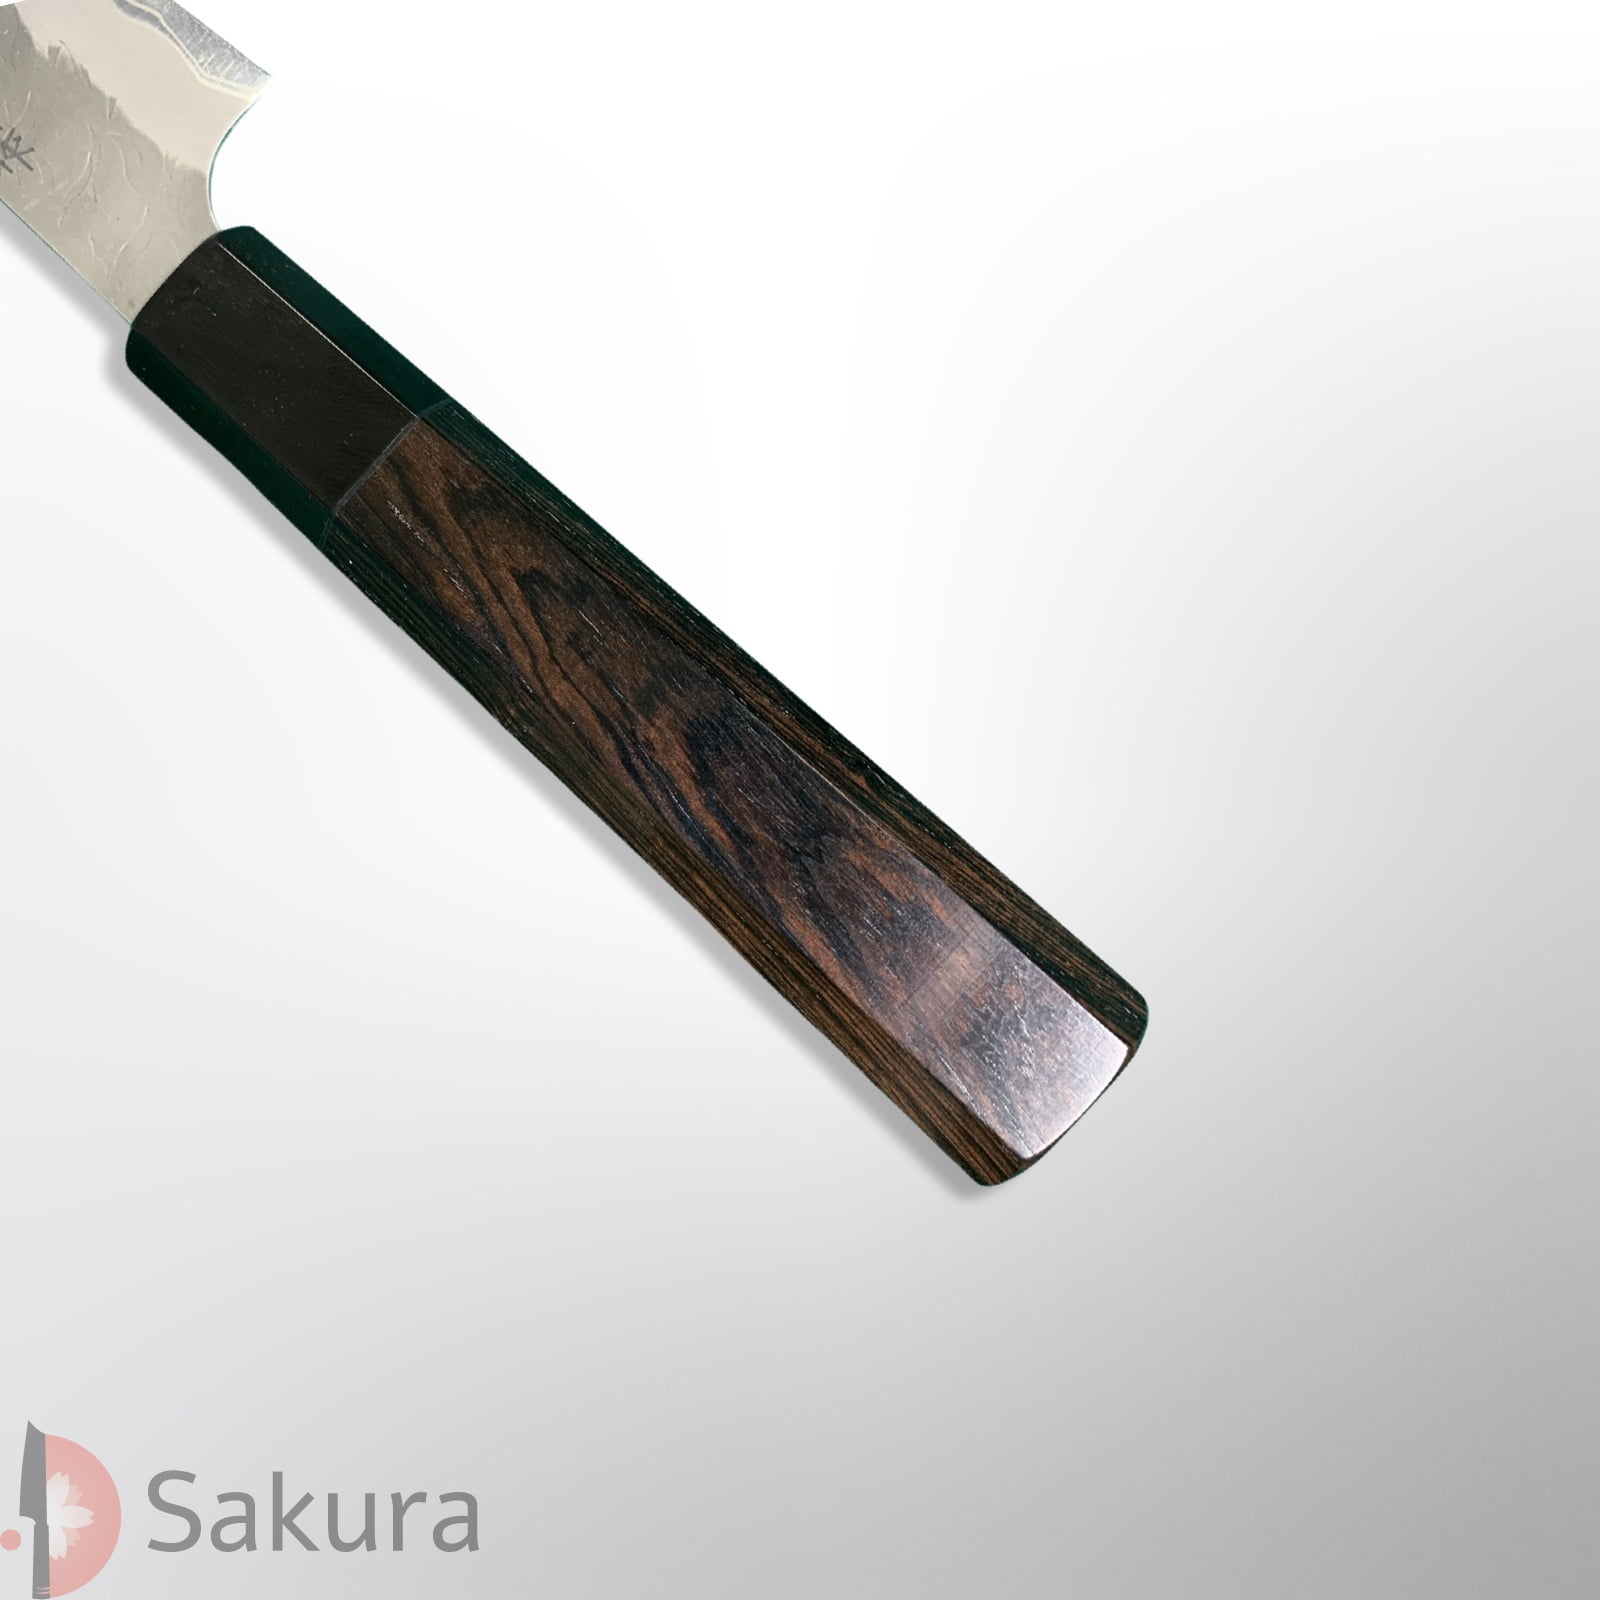 סכין עזר קטנה רב-תכליתית פֶּטִי 150מ״מ מחושלת בעבודת יד 3 שכבות: פלדת פחמן יפנית מתקדמת Aogami Super גימור מט עם ריקוע פטיש ניגארה יפן SKNIGAASPETTY15016